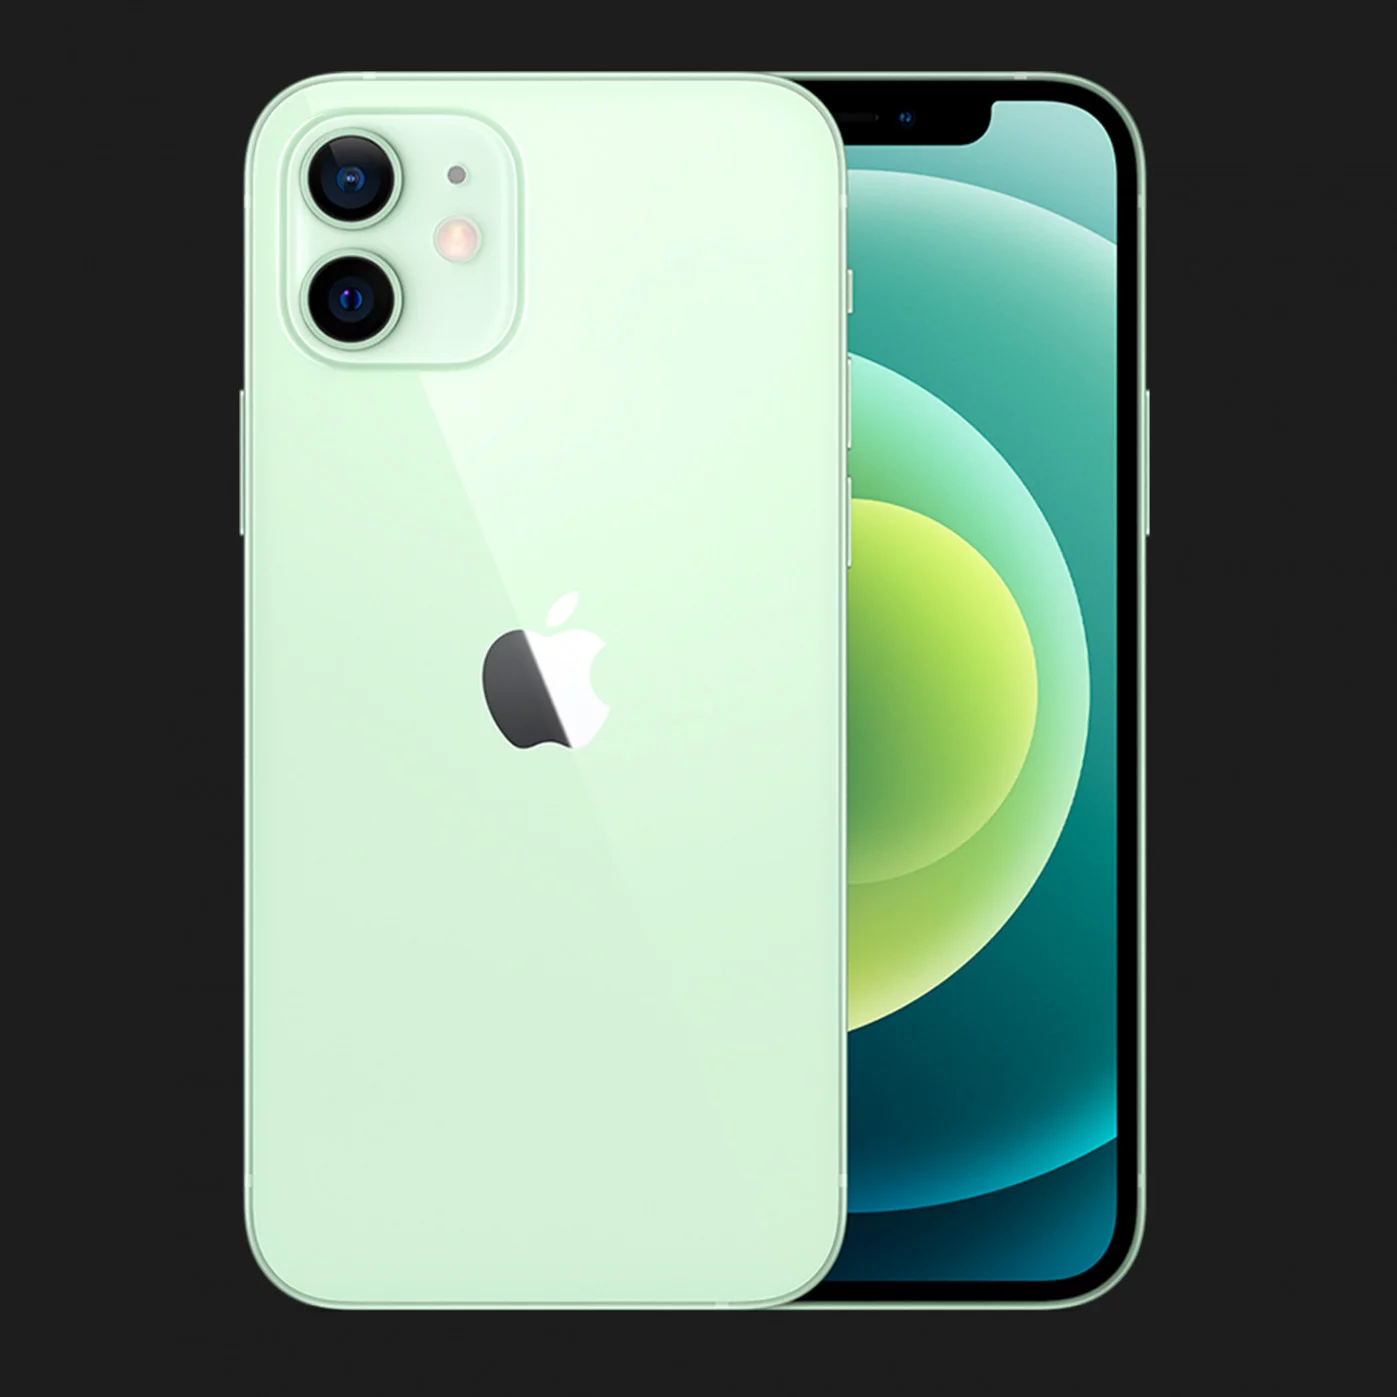 Купить Apple iPhone 12 mini 64GB (Green) — цены ⚡, отзывы ⚡, характеристики  — ЯБКО